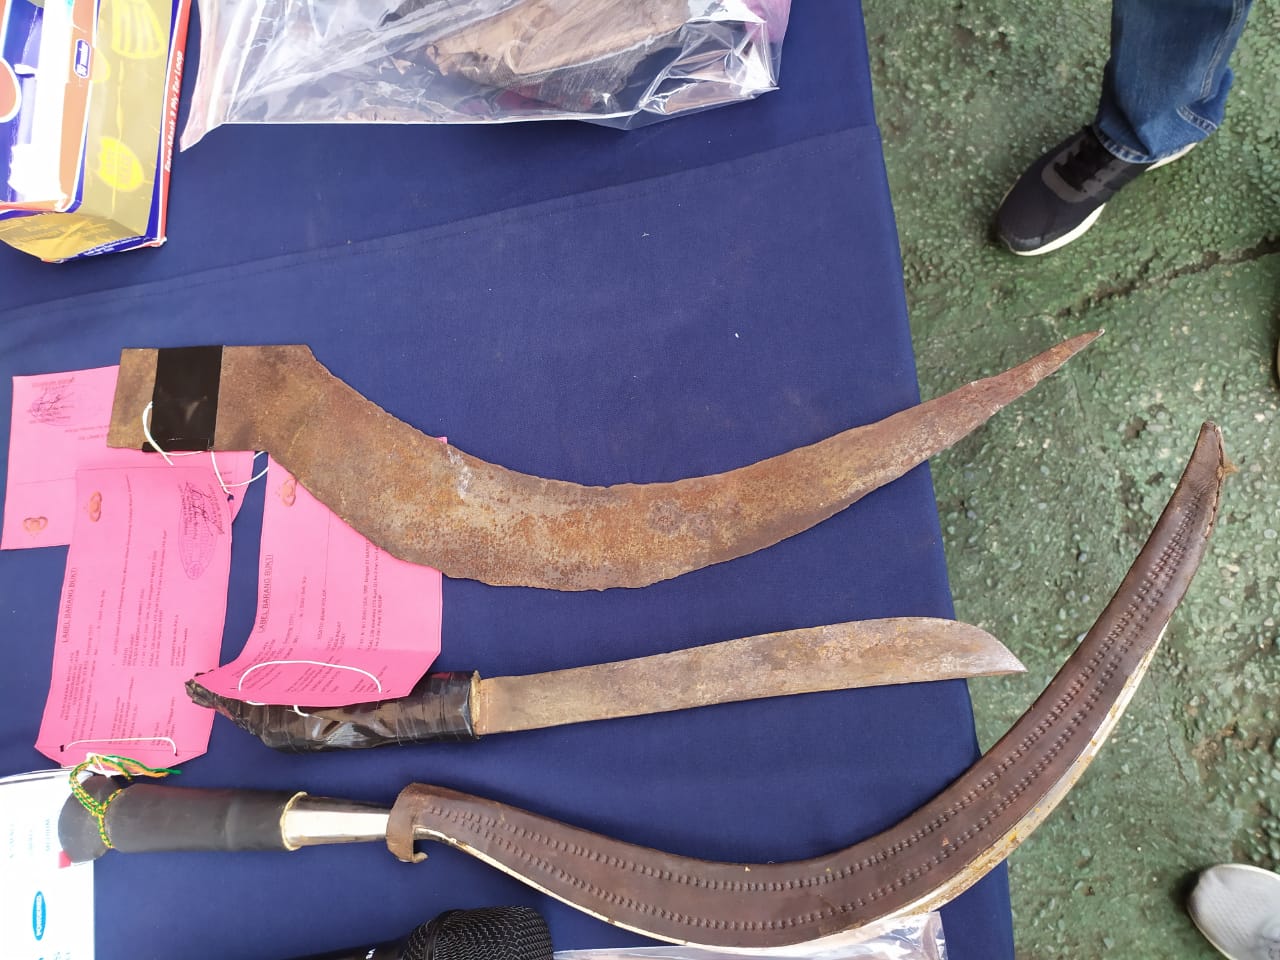 Tiga senjata tajam yang digunakan tersangka pengroyokan menghabisi korbannya di Serpong Utara, Tangerang Selatan